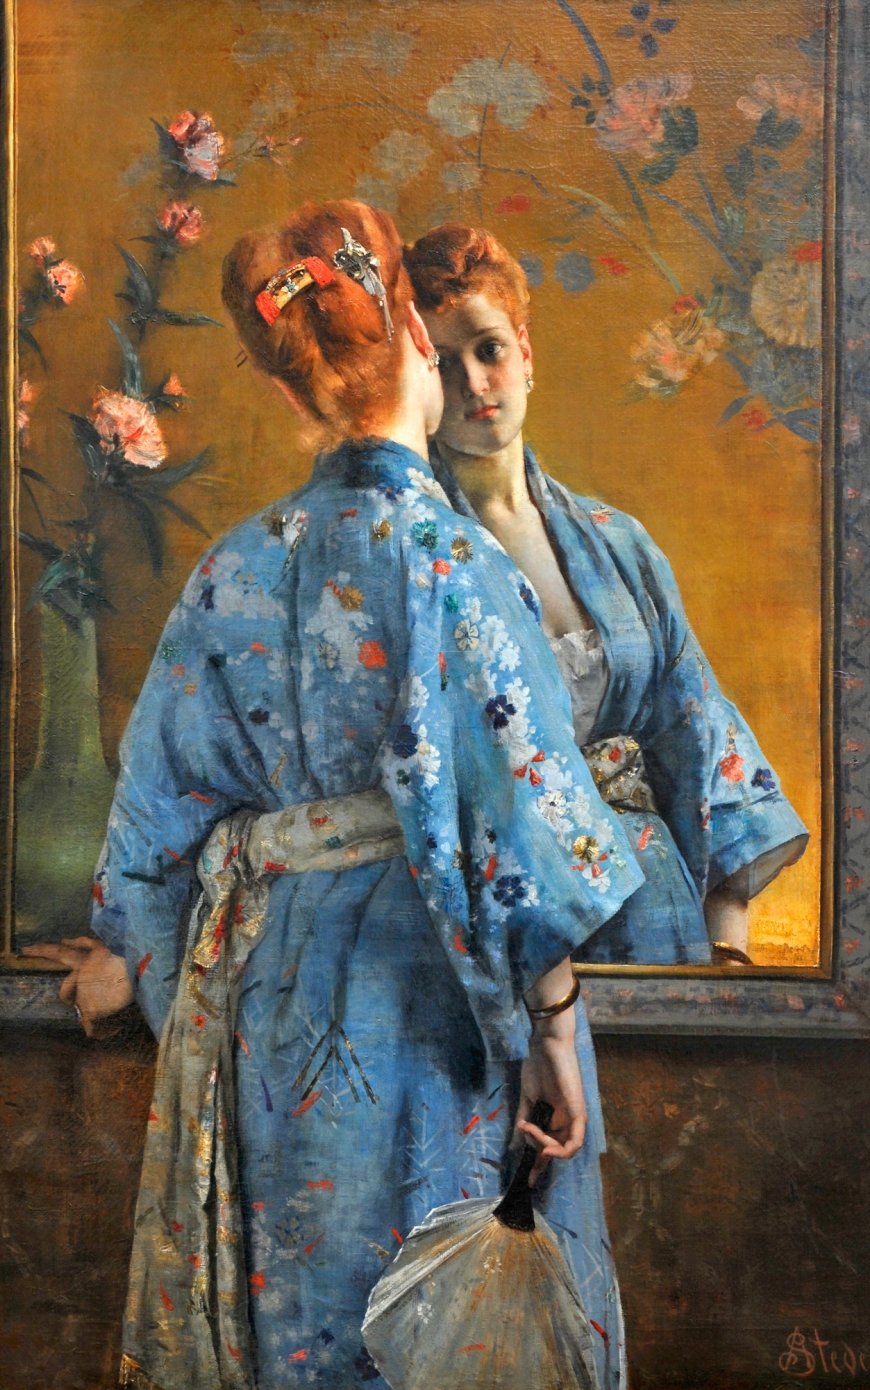 Alfred Stevens, Die japanische Pariserin, 1872, Öl auf Leinwand, 150 x 105 cm, Musée des Beaux-Arts de La Boverie, Lüttich © Musée des Beaux-Arts de La Boverie, Lüttich